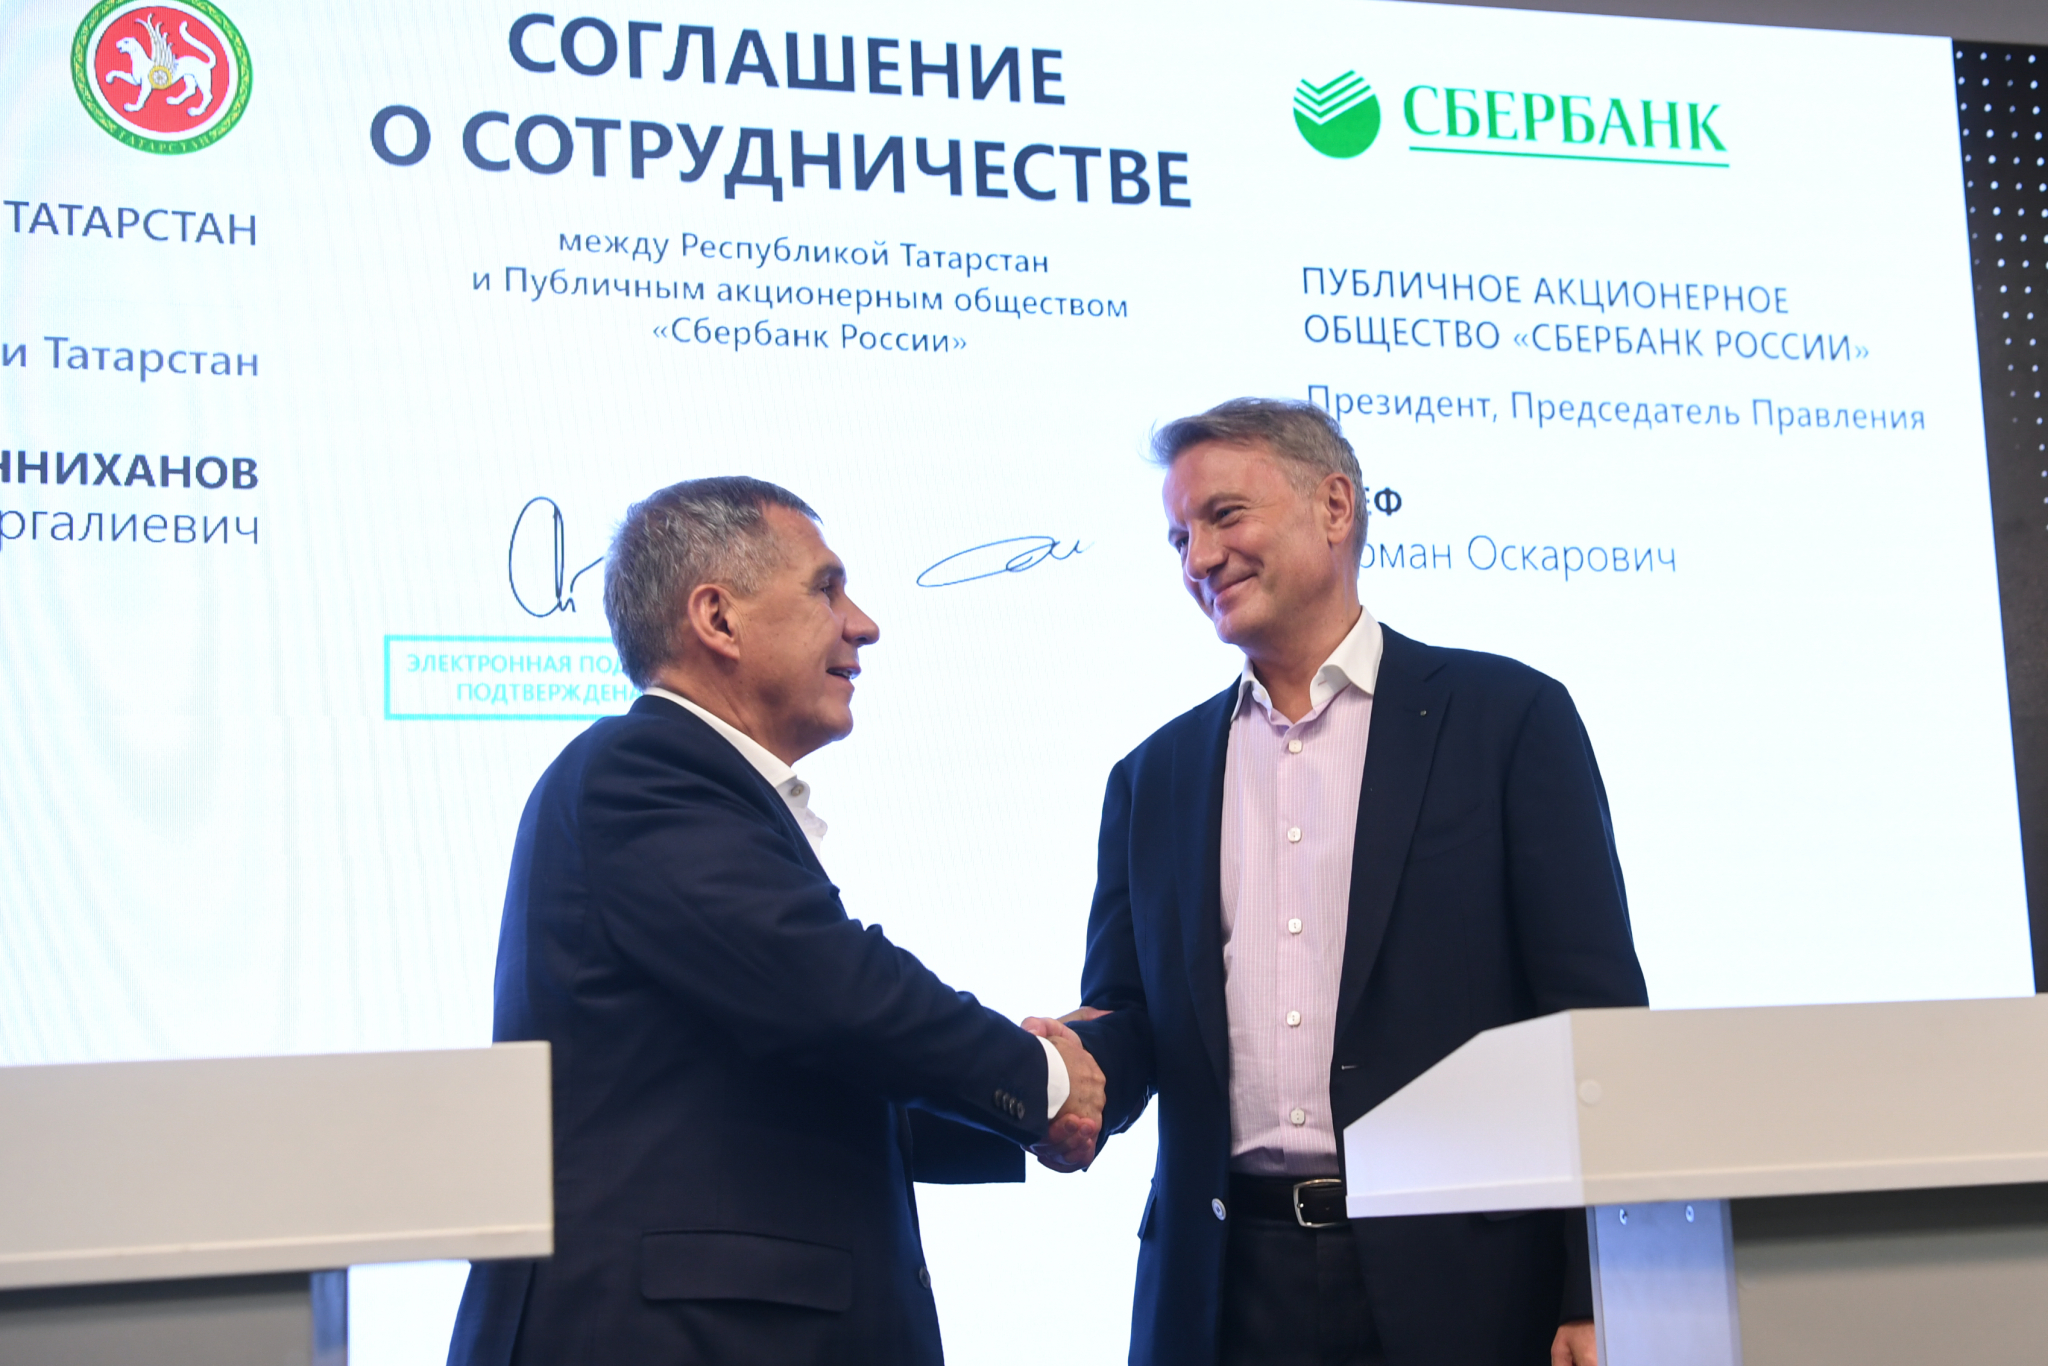 Сбербанк и Правительство Республики Татарстан подписали соглашение о стратегическом партнерстве в сфере цифровизации